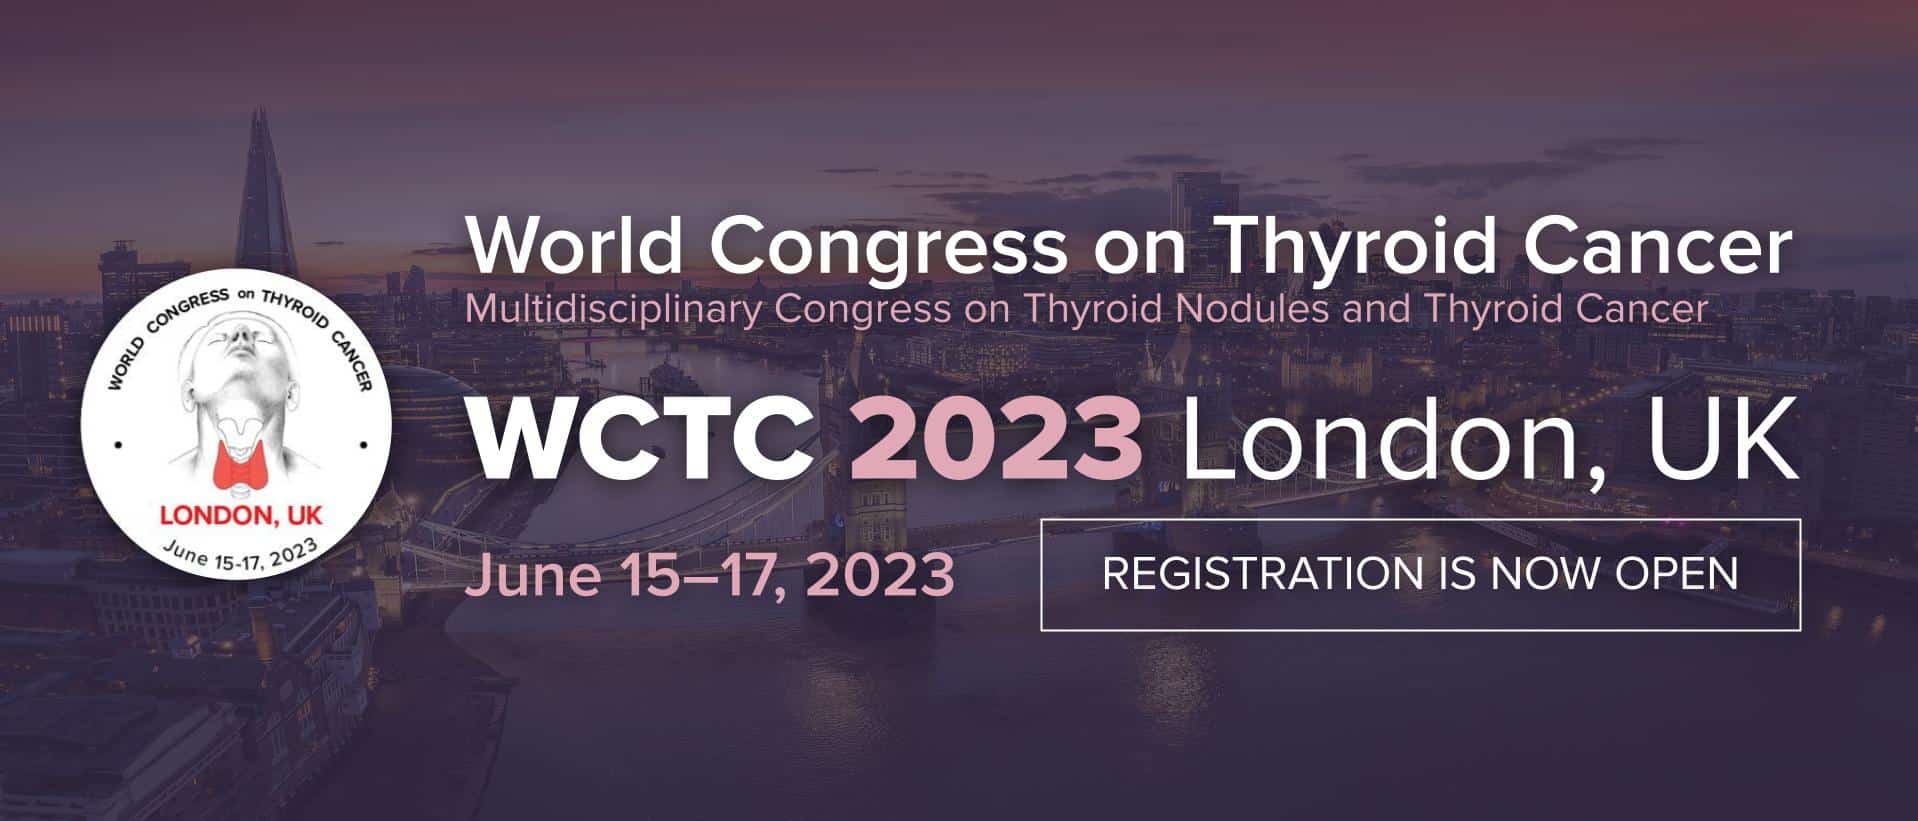 World Congress on Thyroid Cancer - thyroidworldcongress.com